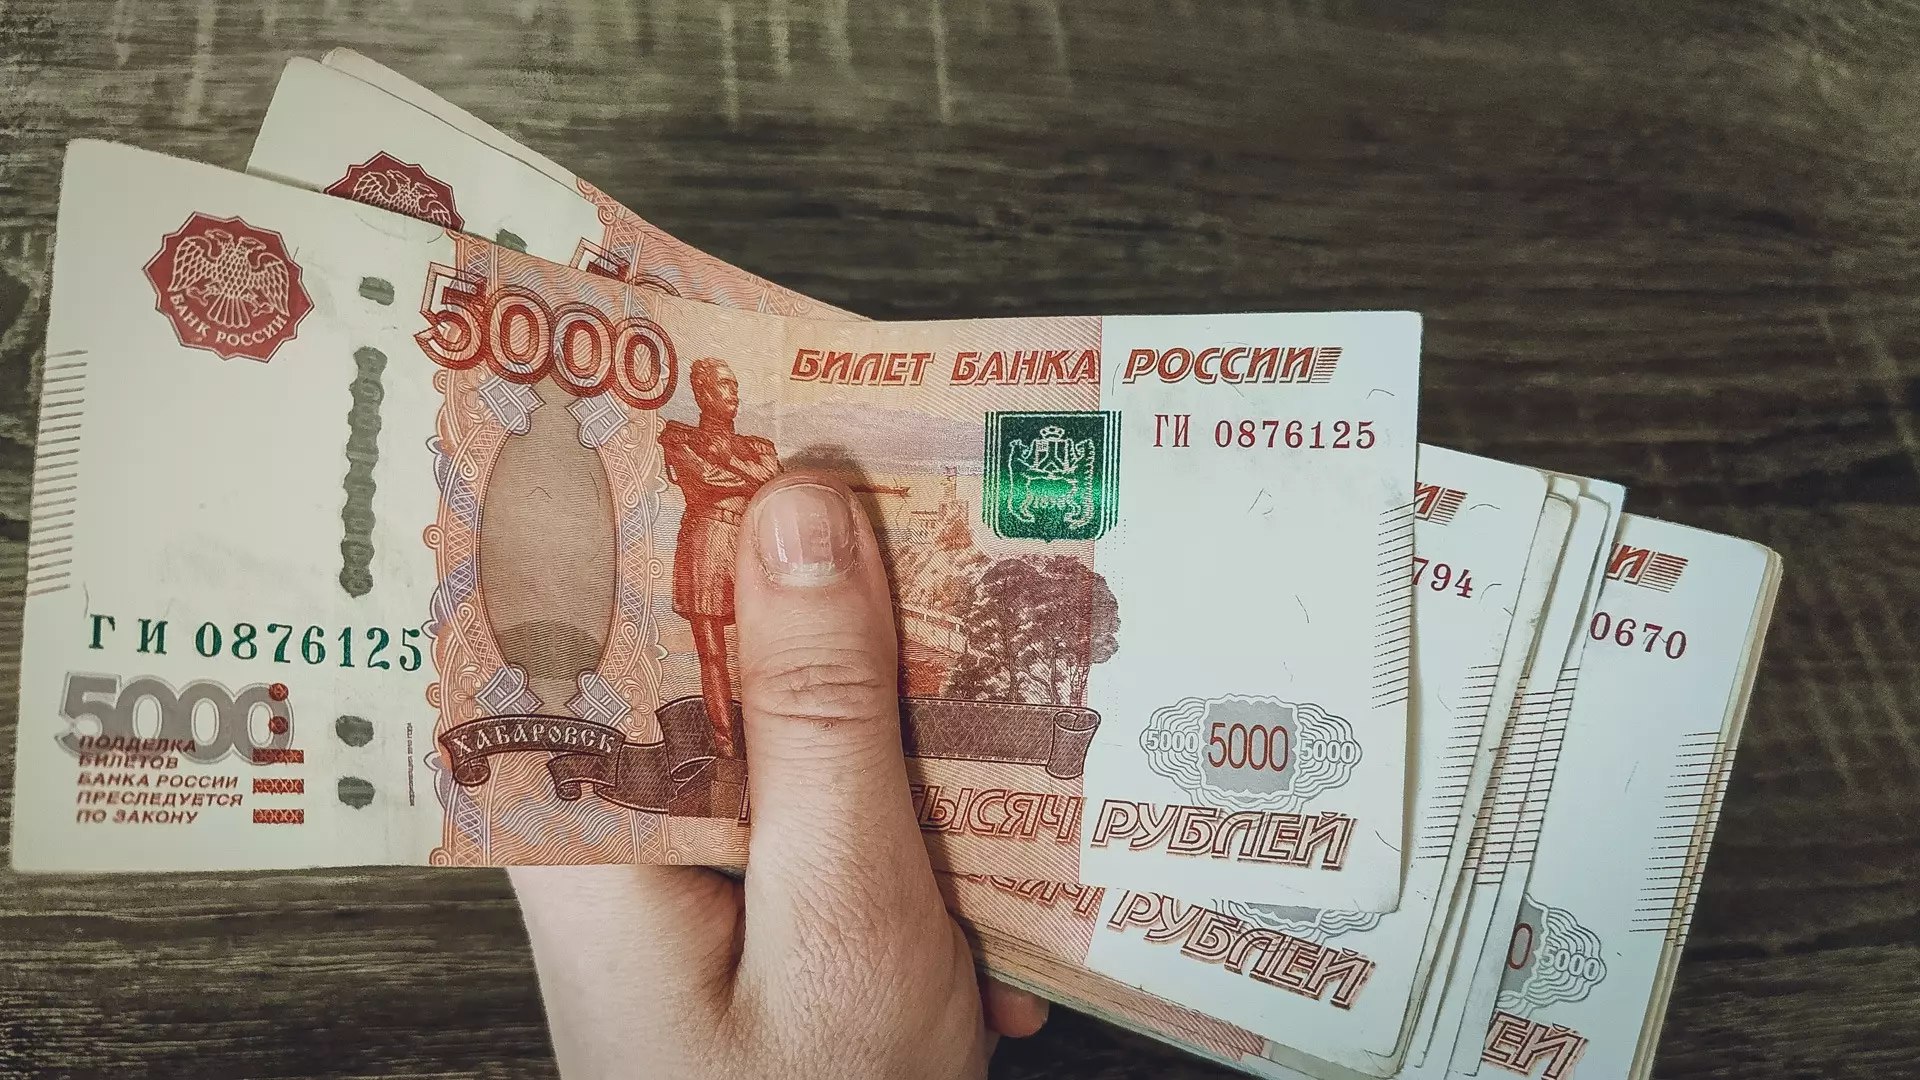 Пенсионерка из ХМАО в попытке стать инвестором потеряла 4 млн рублей